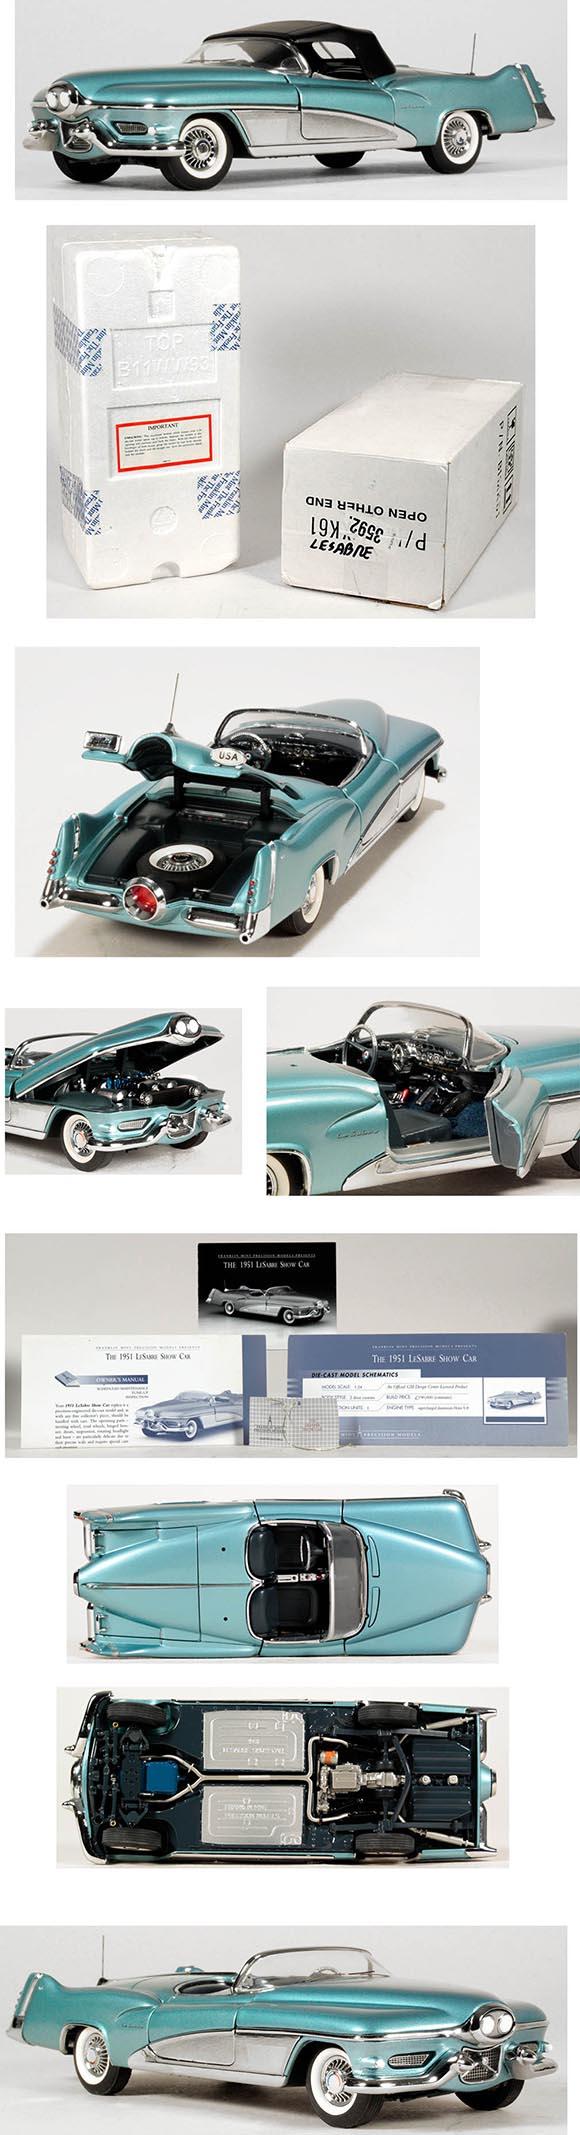 1998, Franklin Mint 1951 Buick LeSabre in Original Box